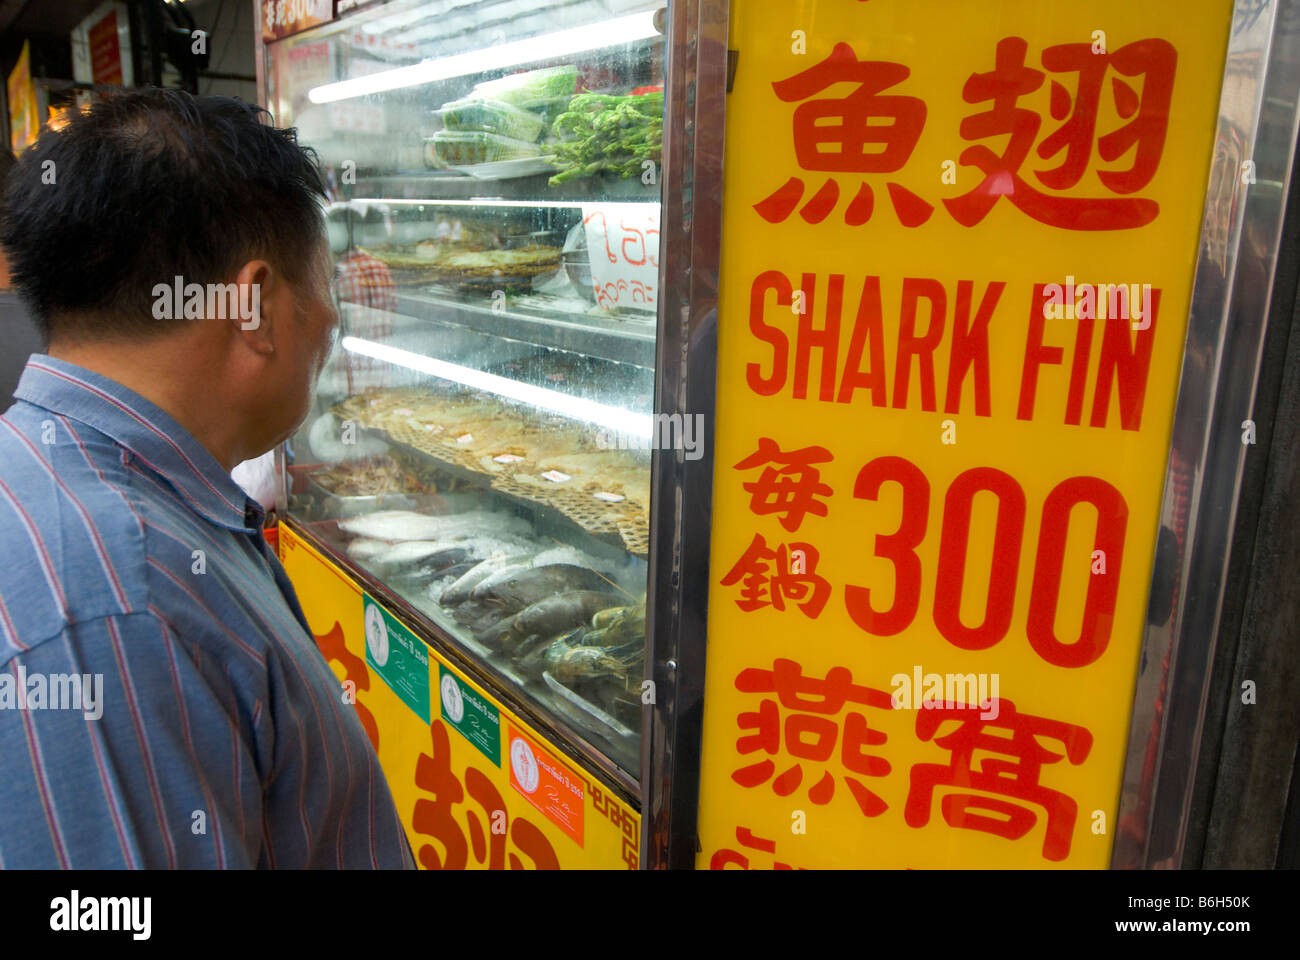 El cliente mirando escaparates de la sopa de aleta de tiburón restaurante chino en el centro de Chinatown Bangkok Thailand Foto de stock